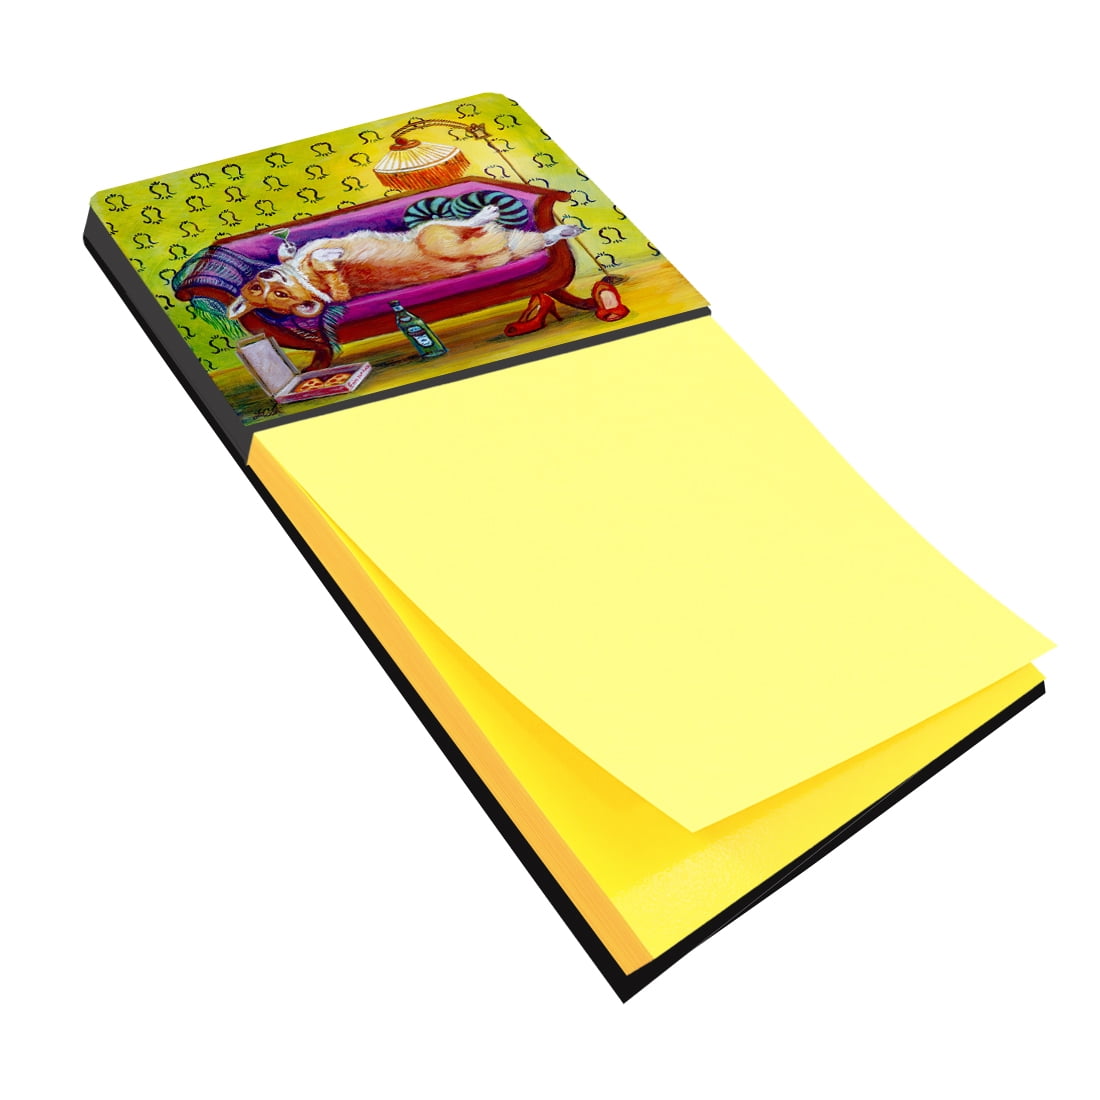 7406sn Corgi Home Alone Sticky Note Holder